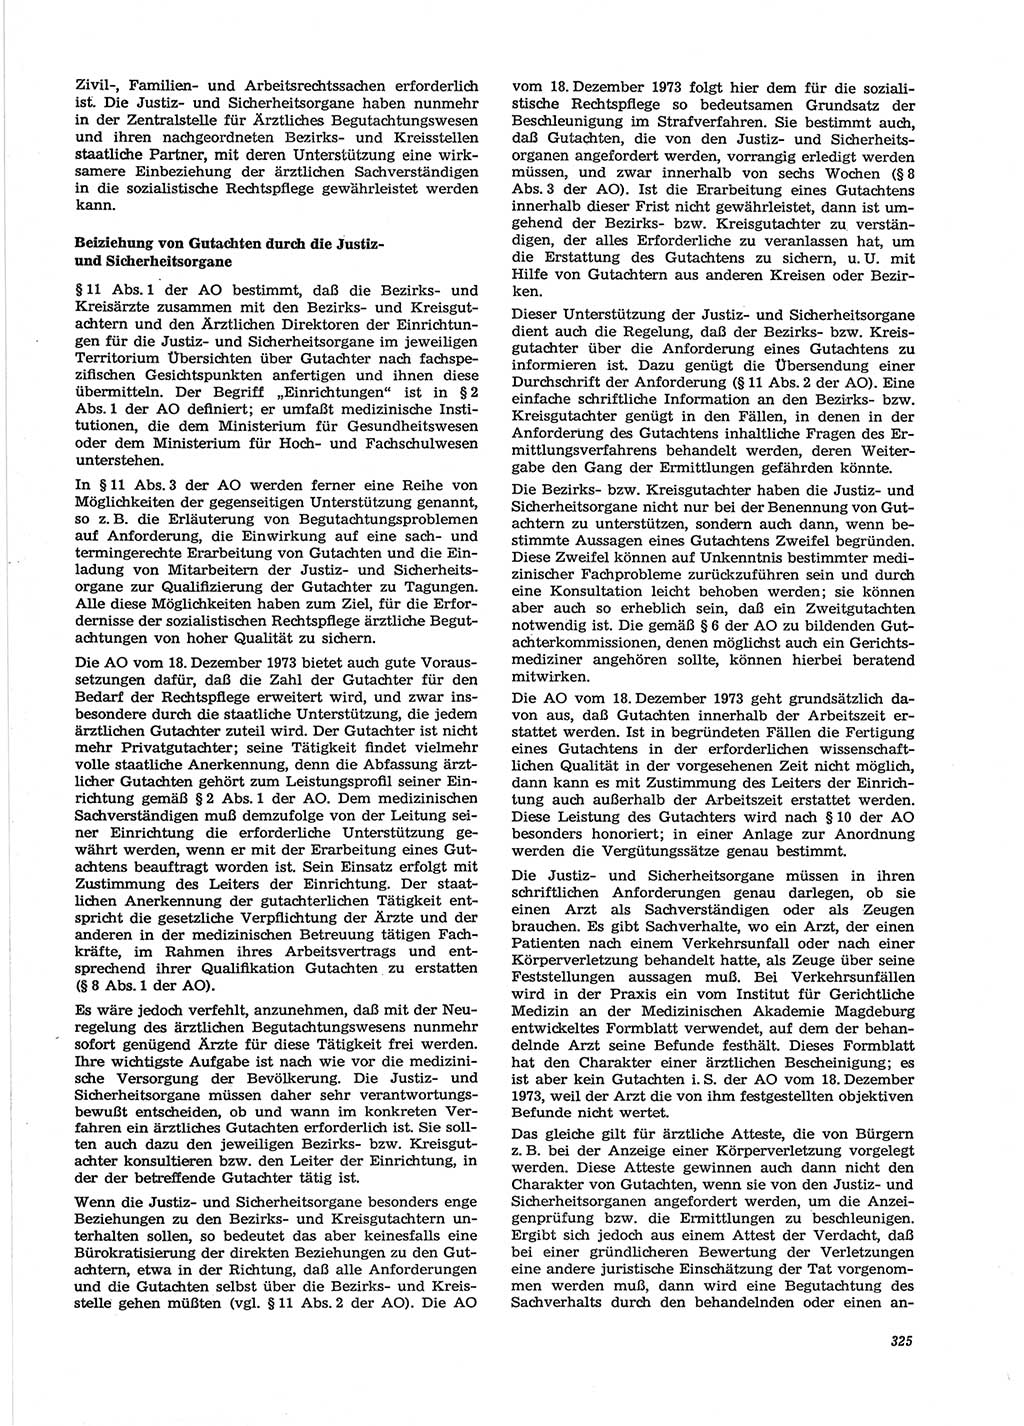 Neue Justiz (NJ), Zeitschrift für Recht und Rechtswissenschaft [Deutsche Demokratische Republik (DDR)], 28. Jahrgang 1974, Seite 325 (NJ DDR 1974, S. 325)